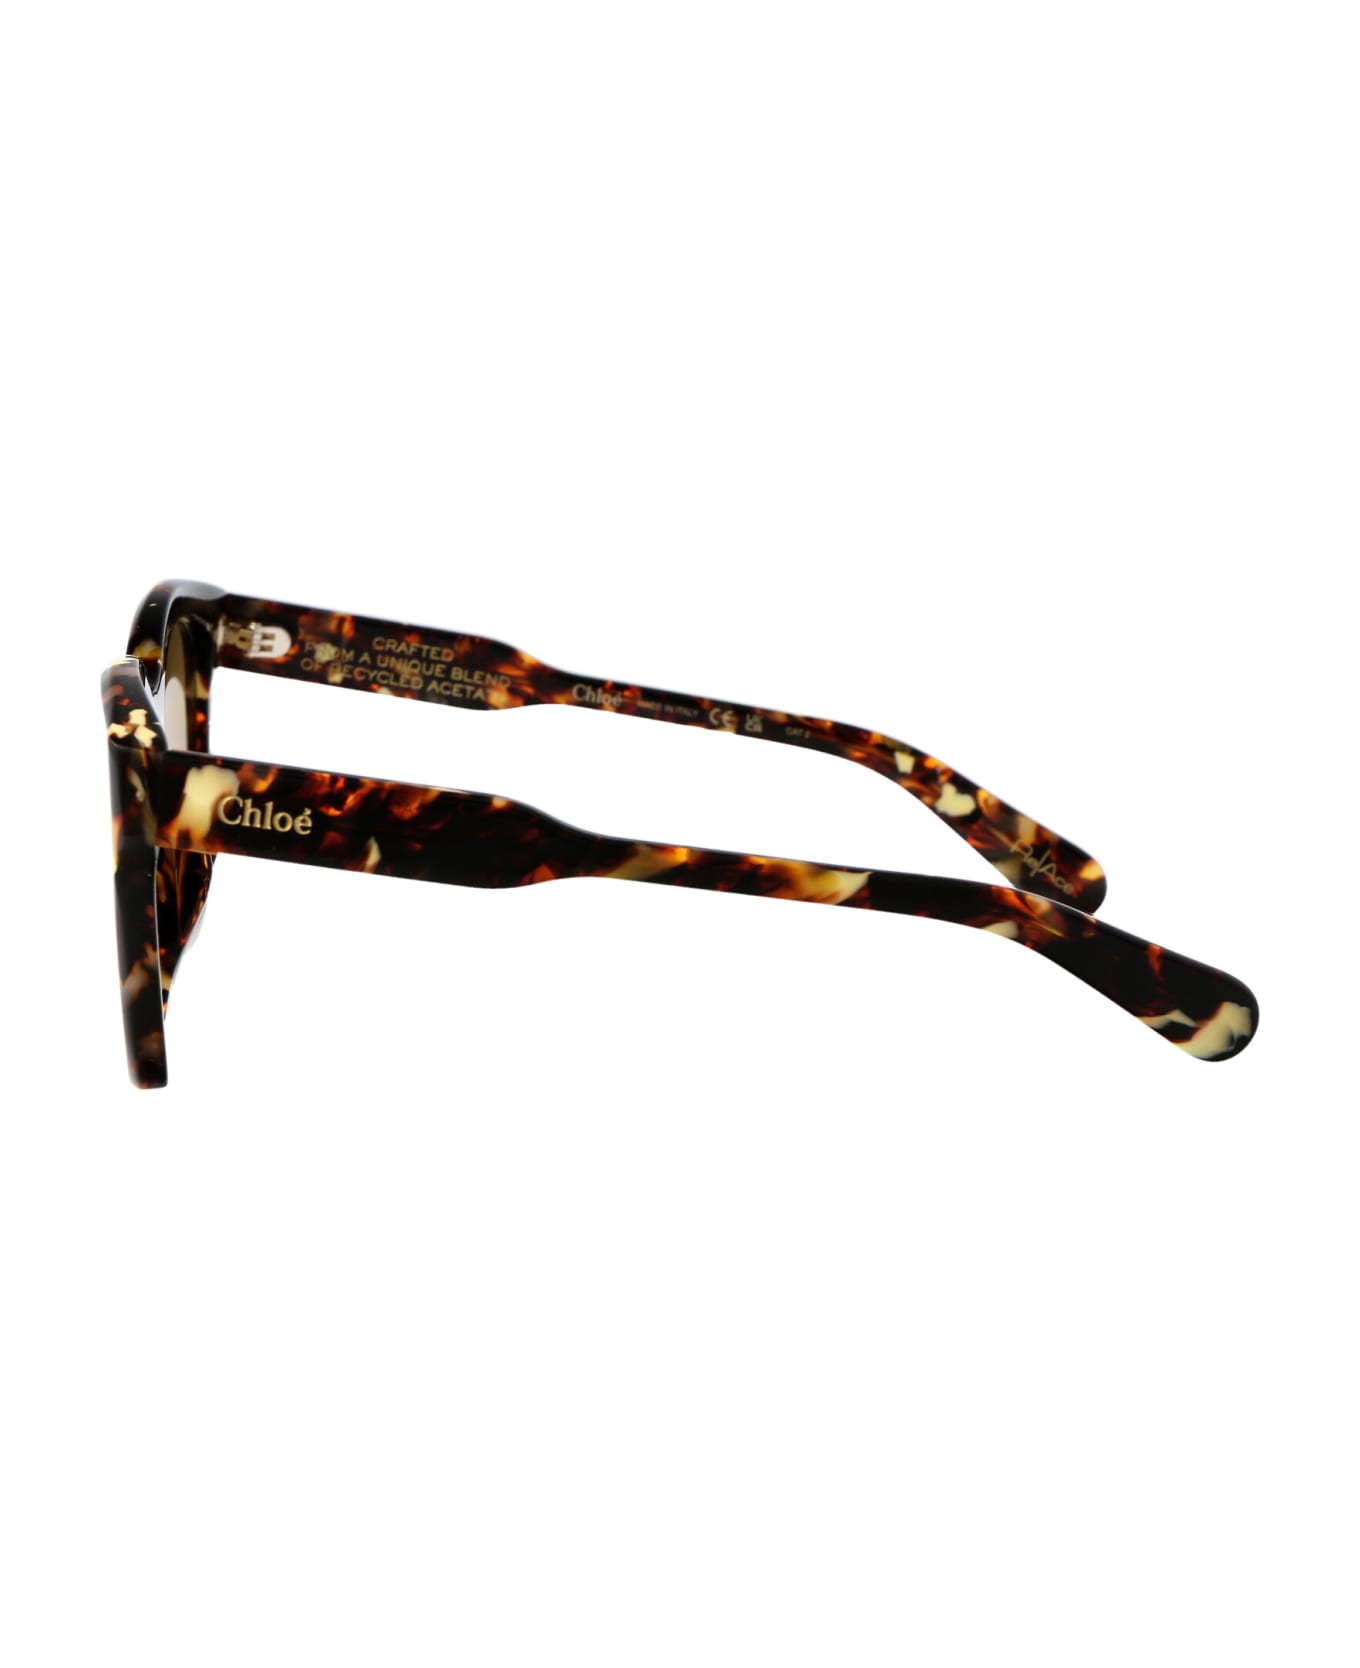 Chloé Eyewear Ch0194sk Sunglasses - 004 HAVANA HAVANA BROWN